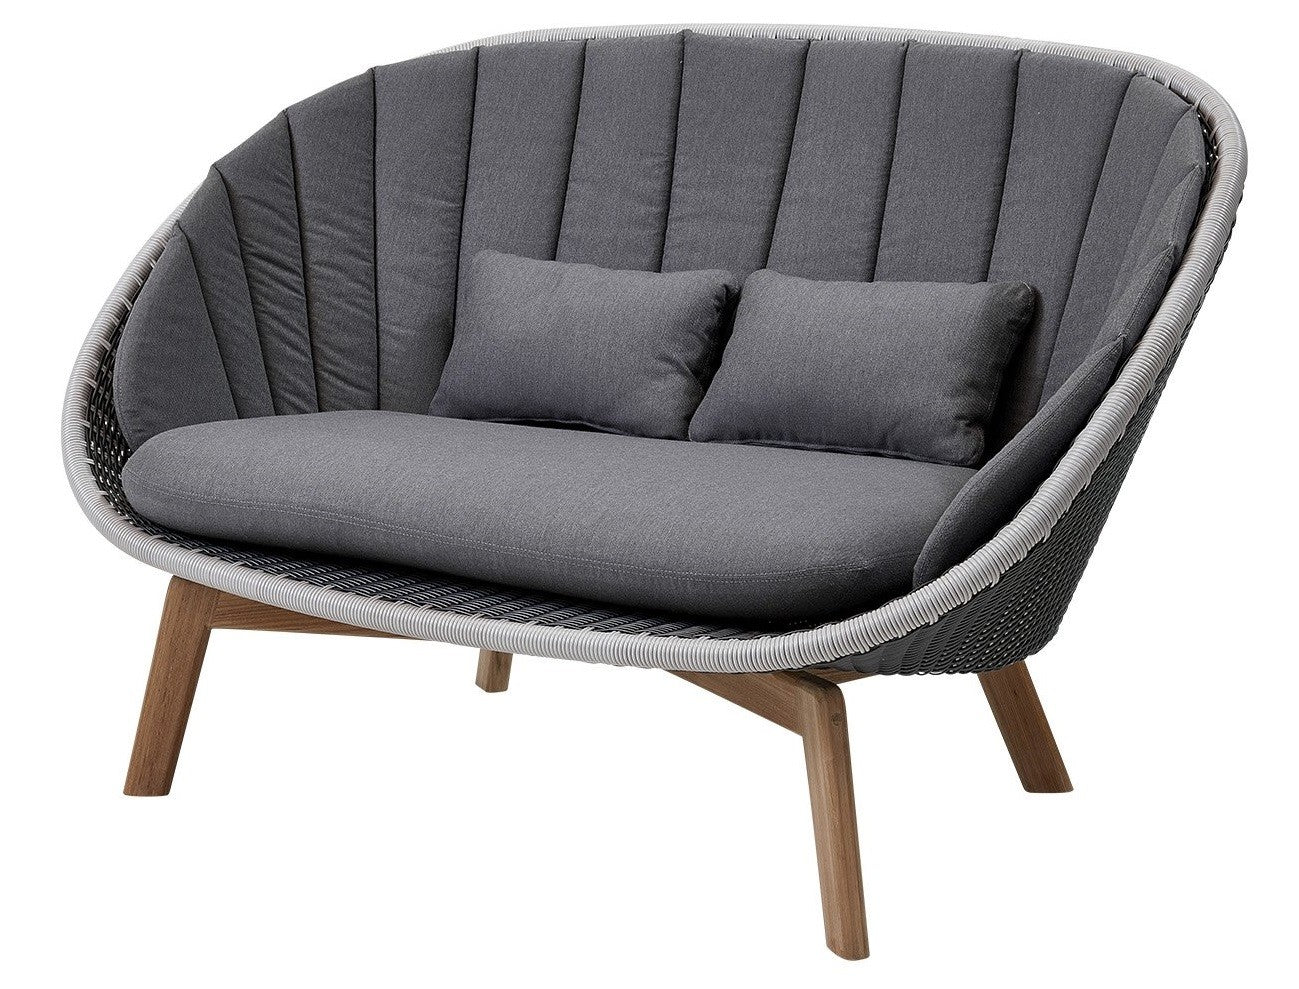 Cane-line Peacock lounge sofa |Bolighuset Werenberg